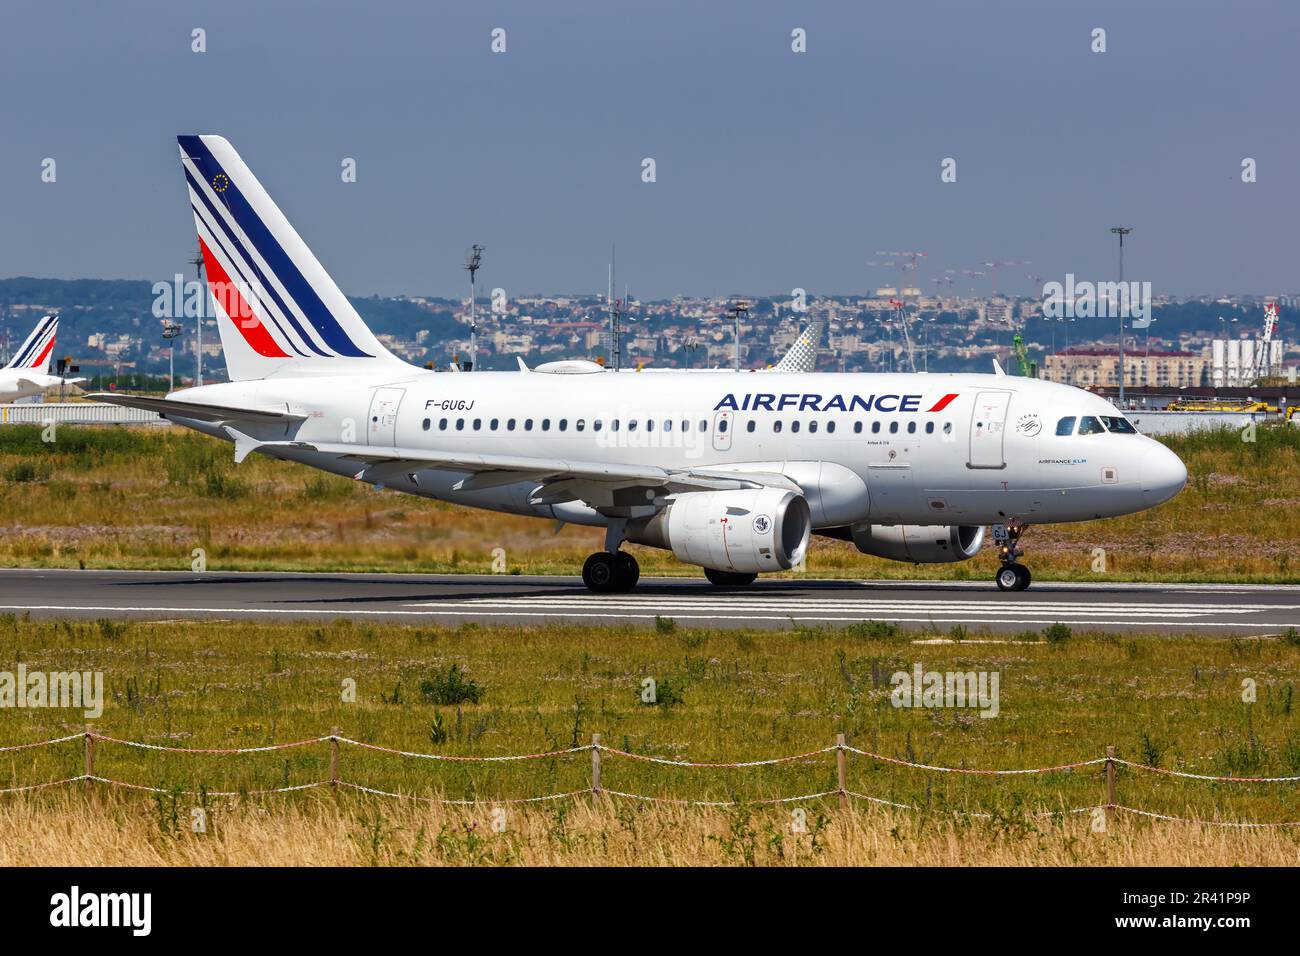 Air France Airbus A318 avion Paris Orly aéroport en France Banque D'Images